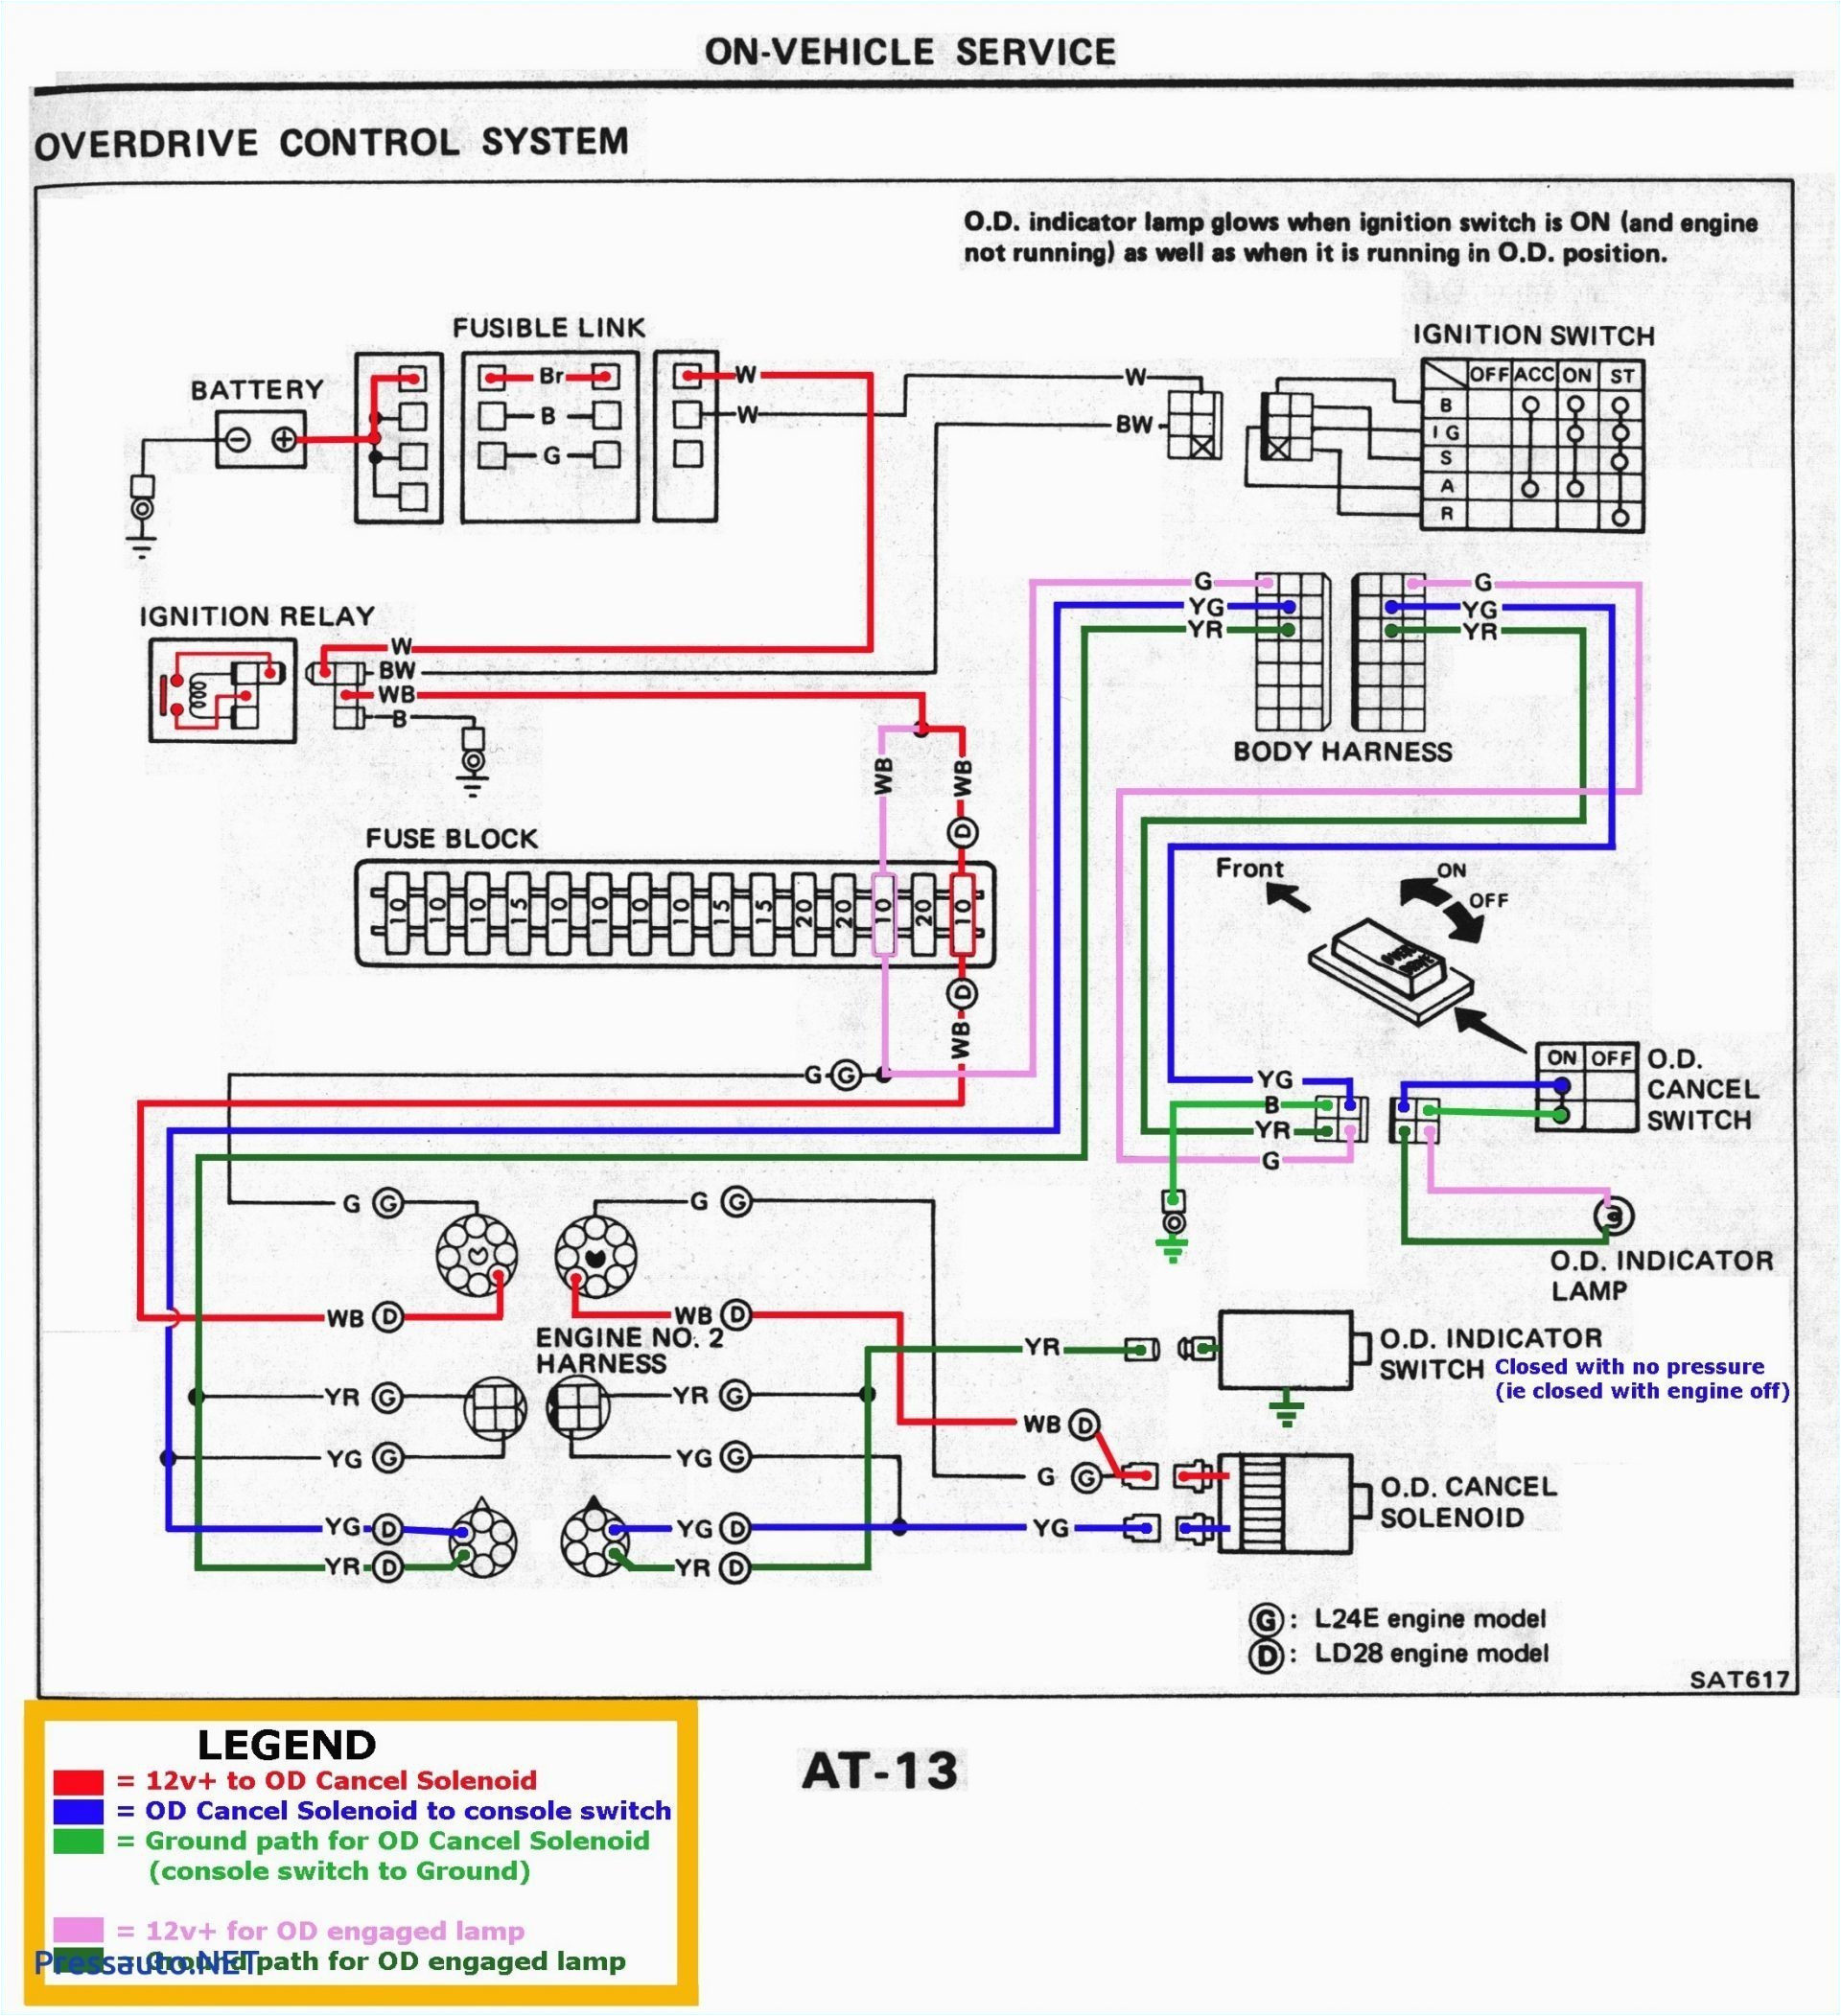 iid wiring diagram wiring diagram iid wiring diagram